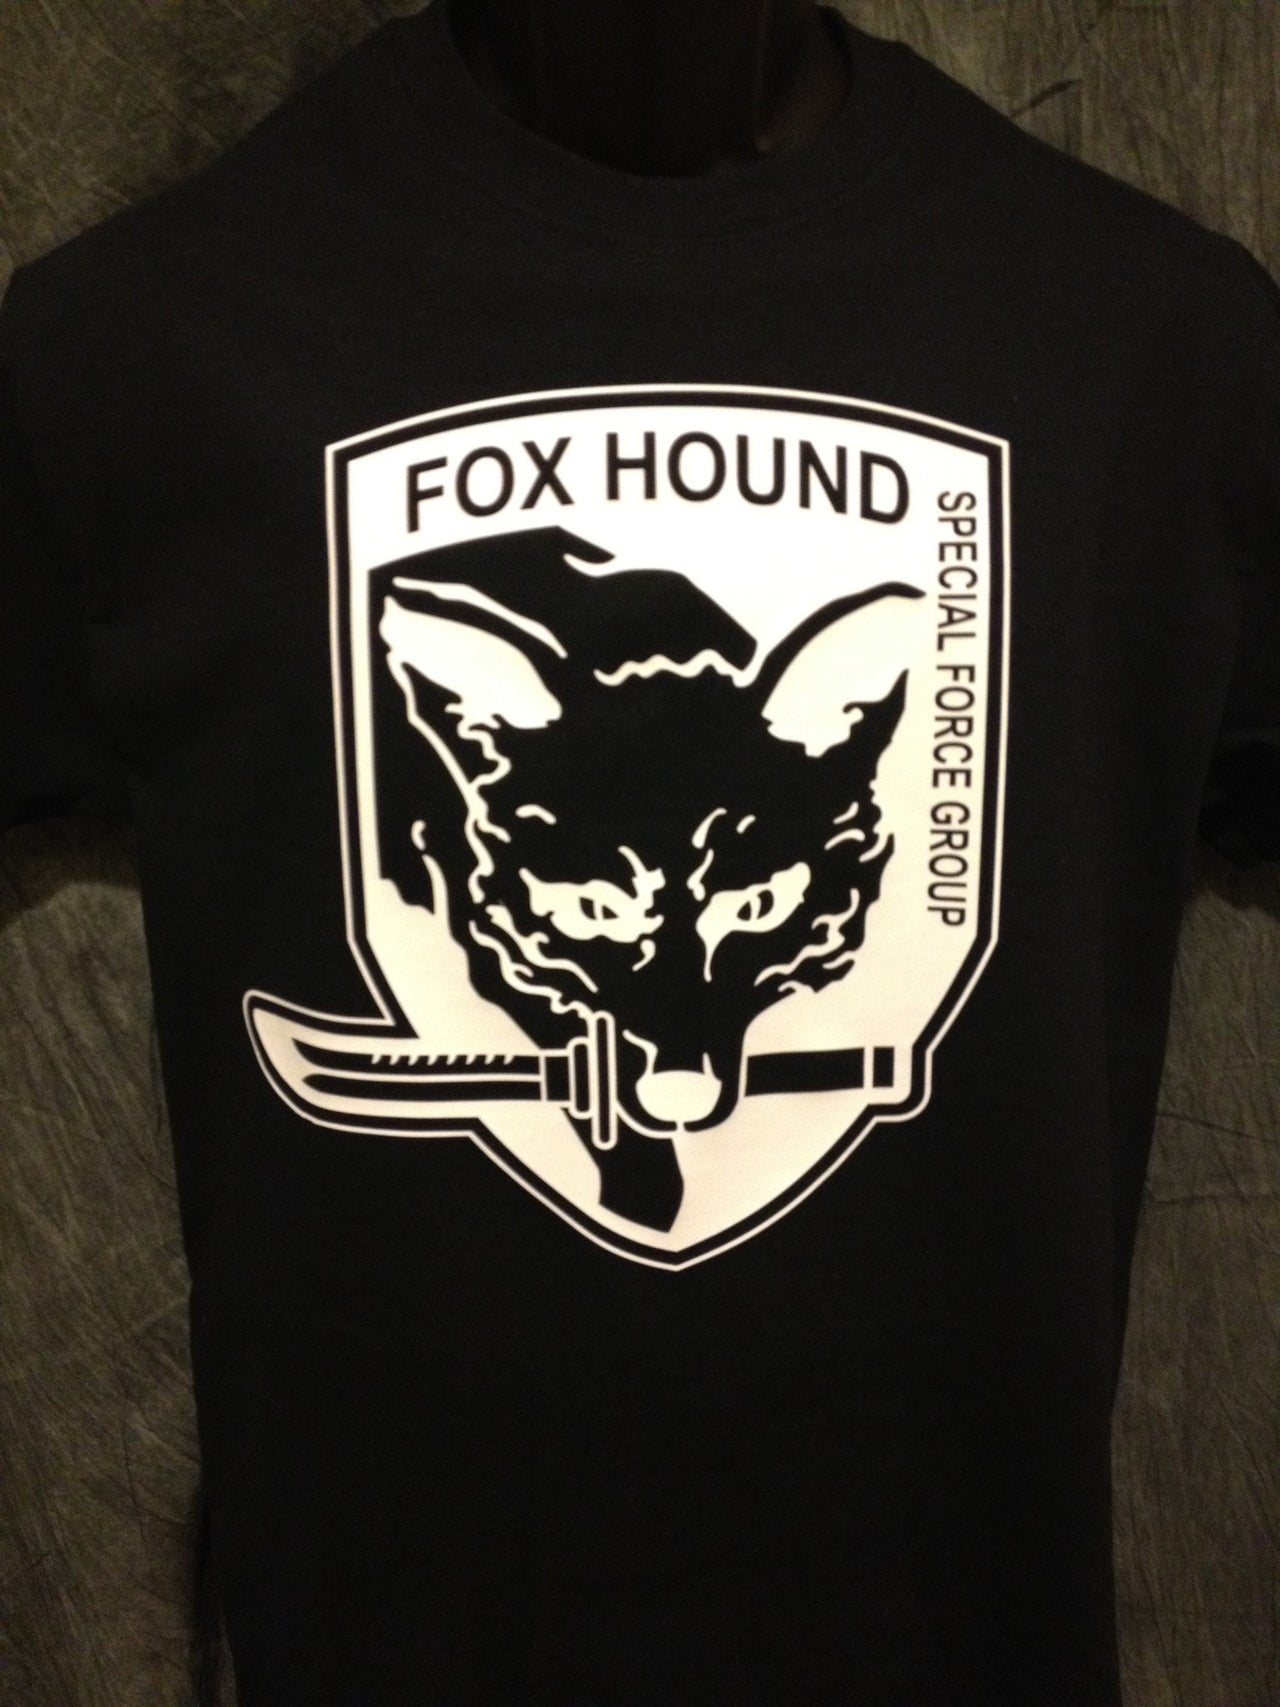 Metal Gear Solid Foxhound Tshirt: Black With White Print - TshirtNow.net - 3